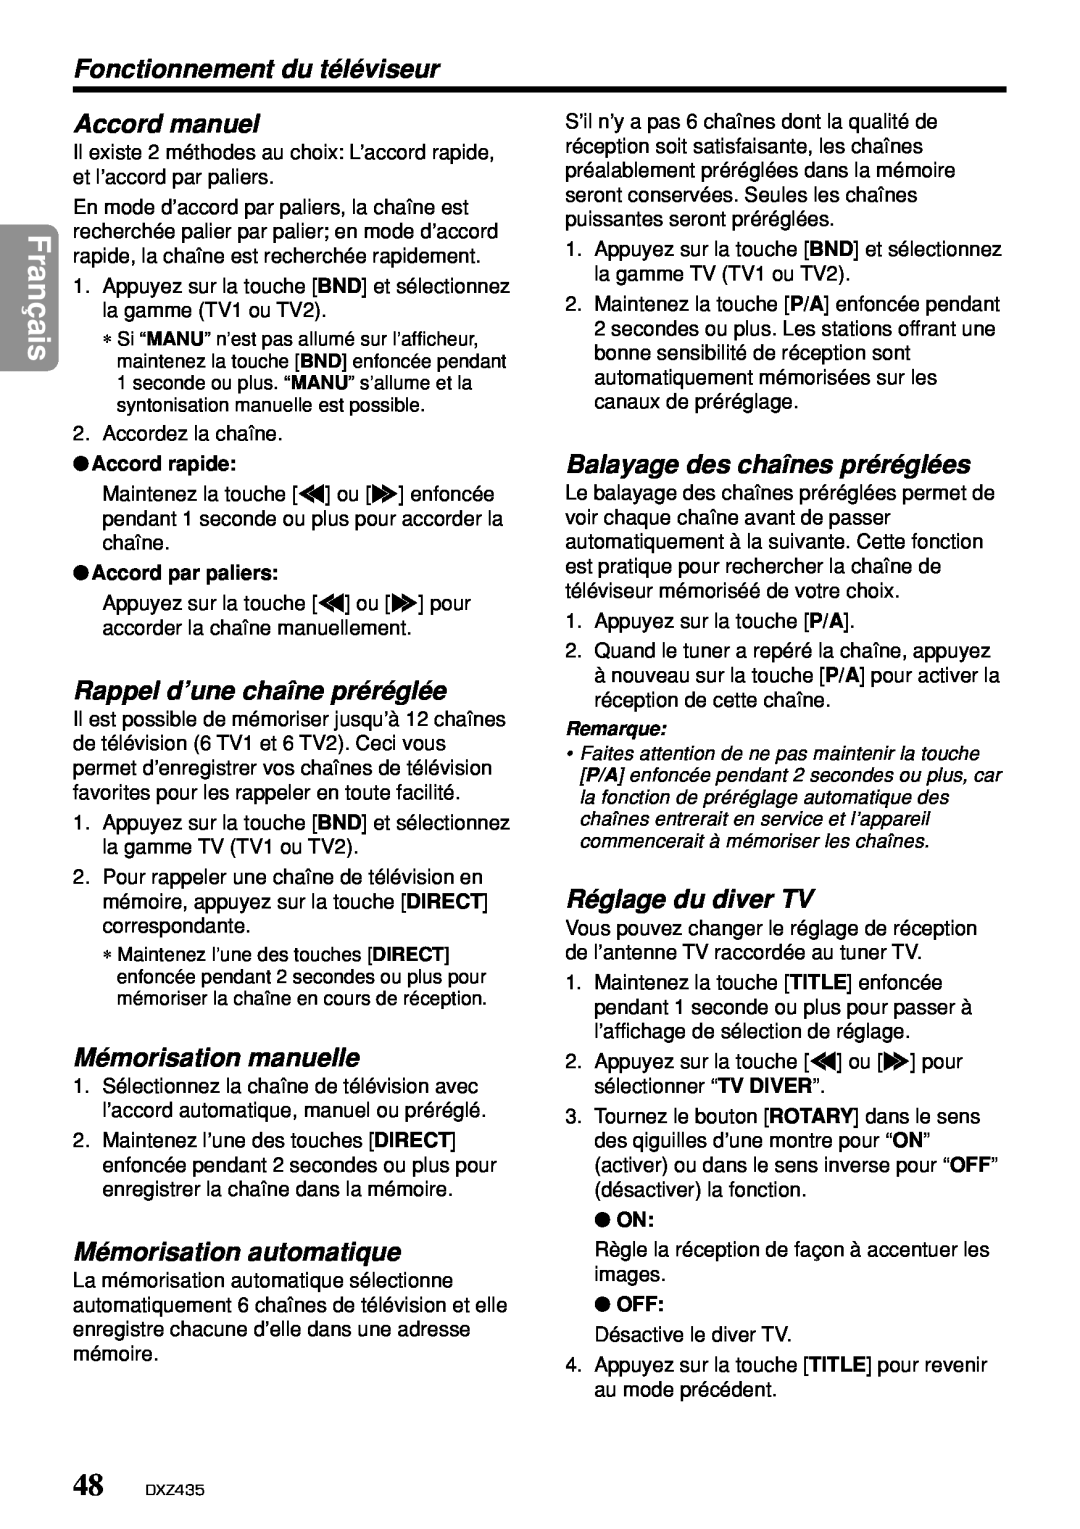 Clarion DXZ435 Fonctionnement du téléviseur, Rappel d’une chaîne préréglée, Balayage des chaînes préréglées, Français 